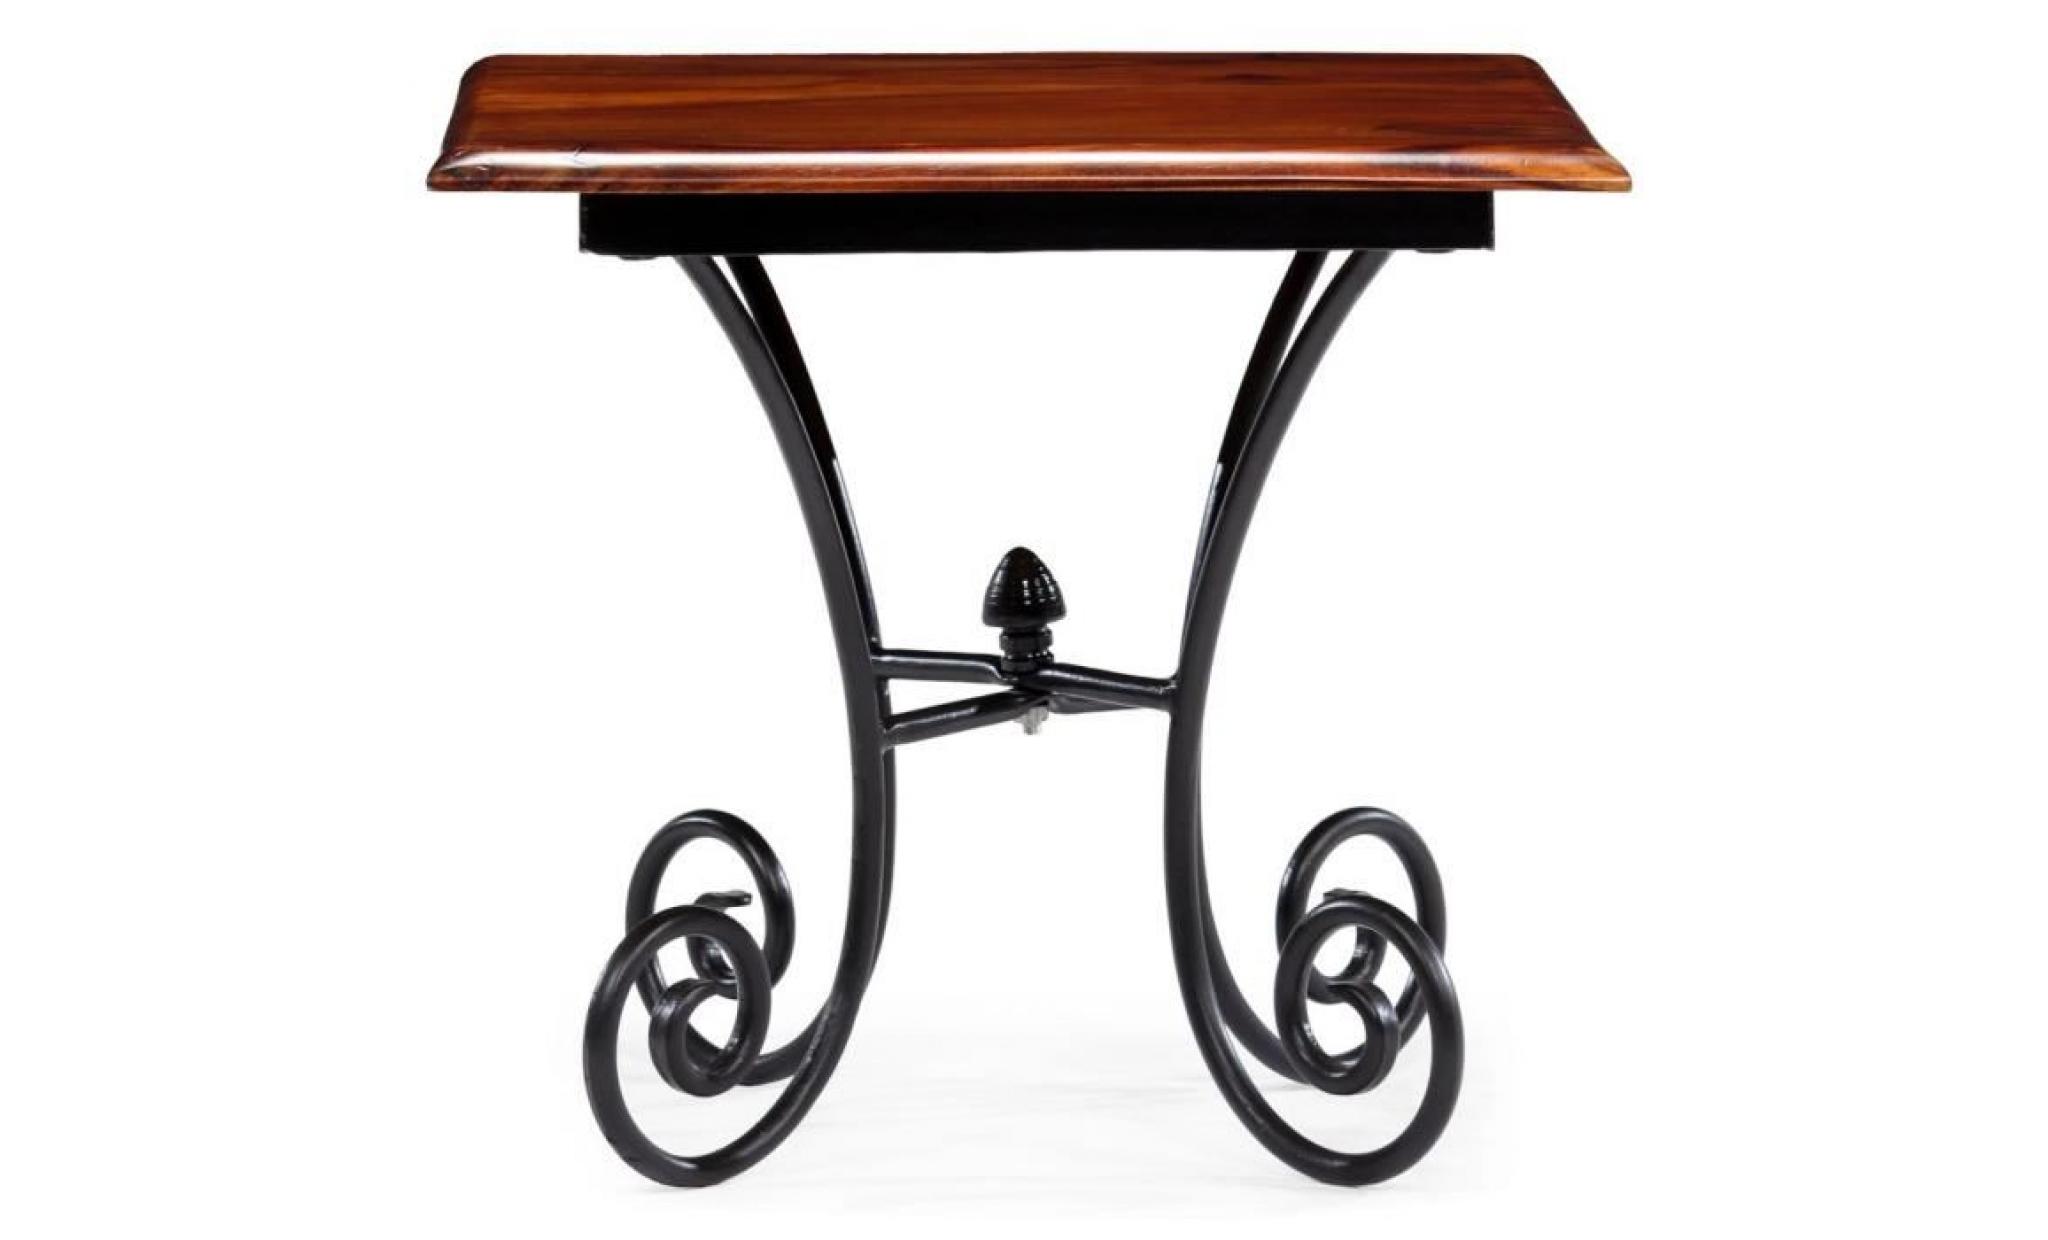 tables basses materiau : bois de sesham solide + acier dimensions : 110 x 60 x 39 cm (l x l x